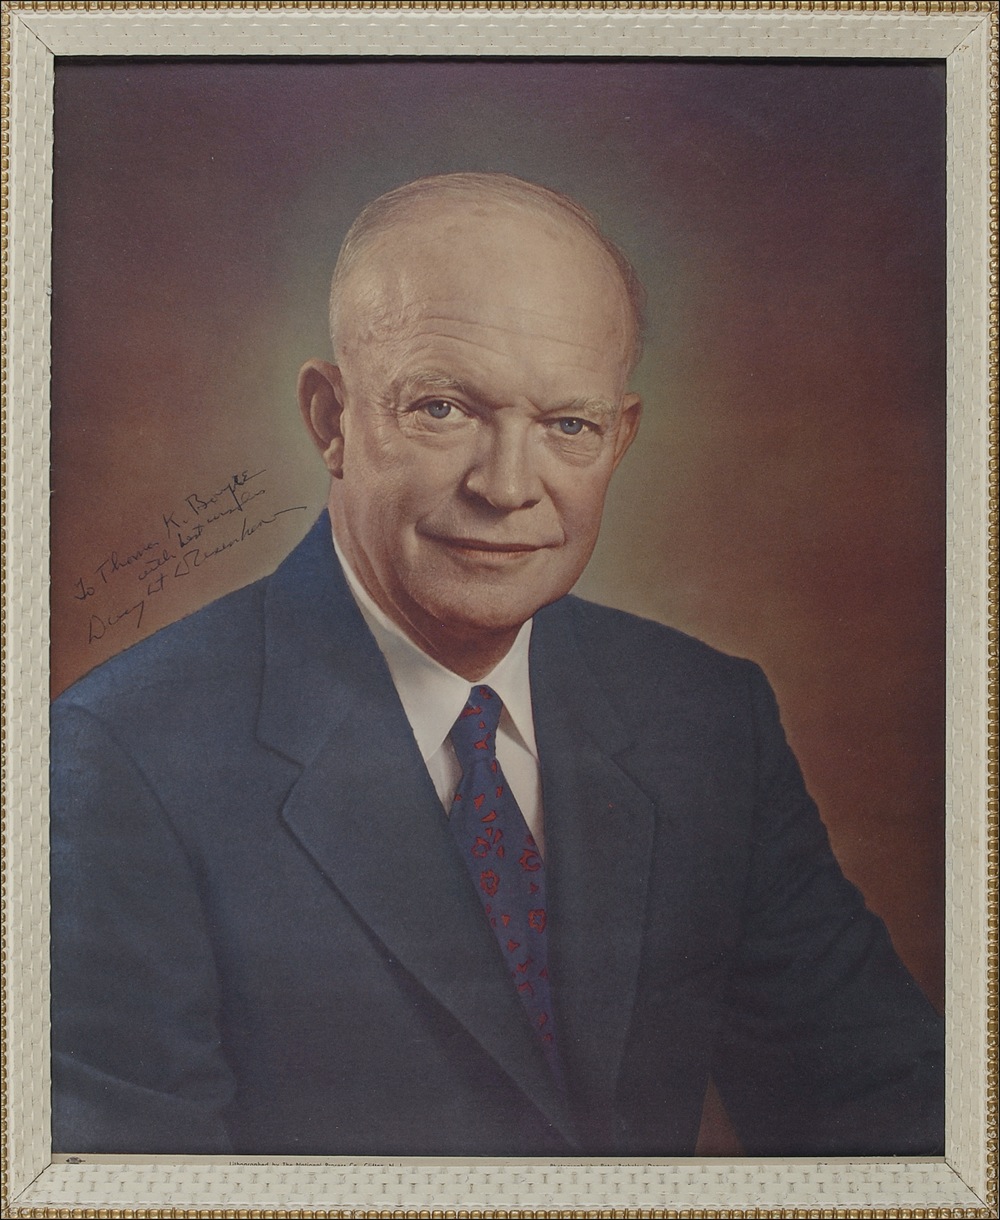 Lot #57 Dwight D. Eisenhower